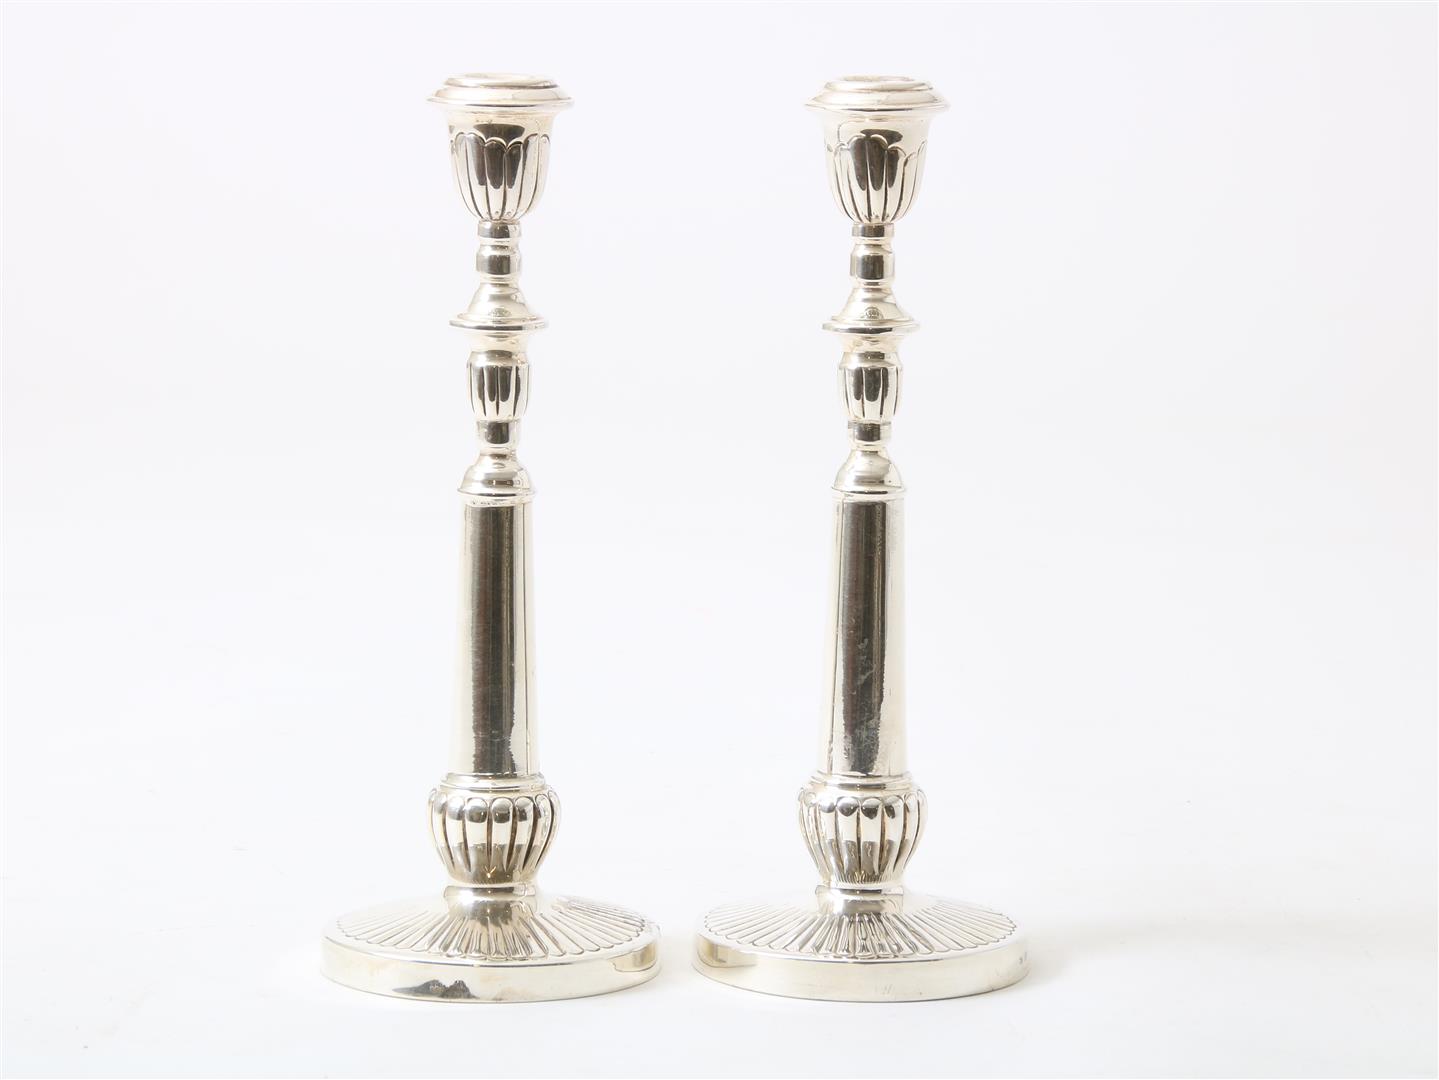 Set of silver one-light candlesticks, grade 900/000, height 26 cm, gross weight 540 grams. (